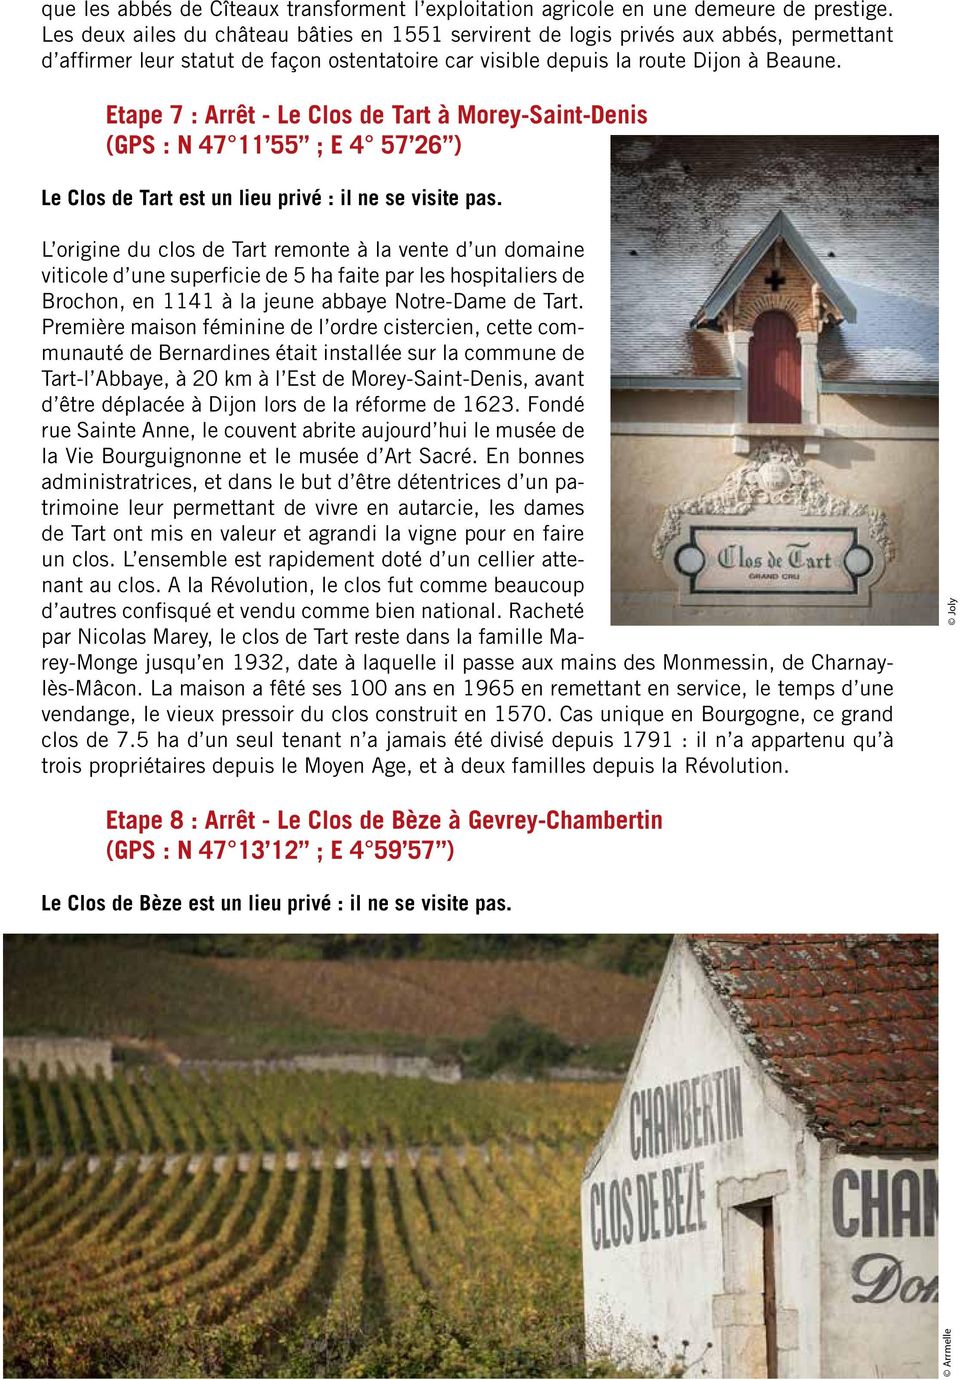 Etape 7 : Arrêt - Le Clos de Tart à Morey-Saint-Denis (GPS : N 47 11 55 ; E 4 57 26 ) Le Clos de Tart est un lieu privé : il ne se visite pas.